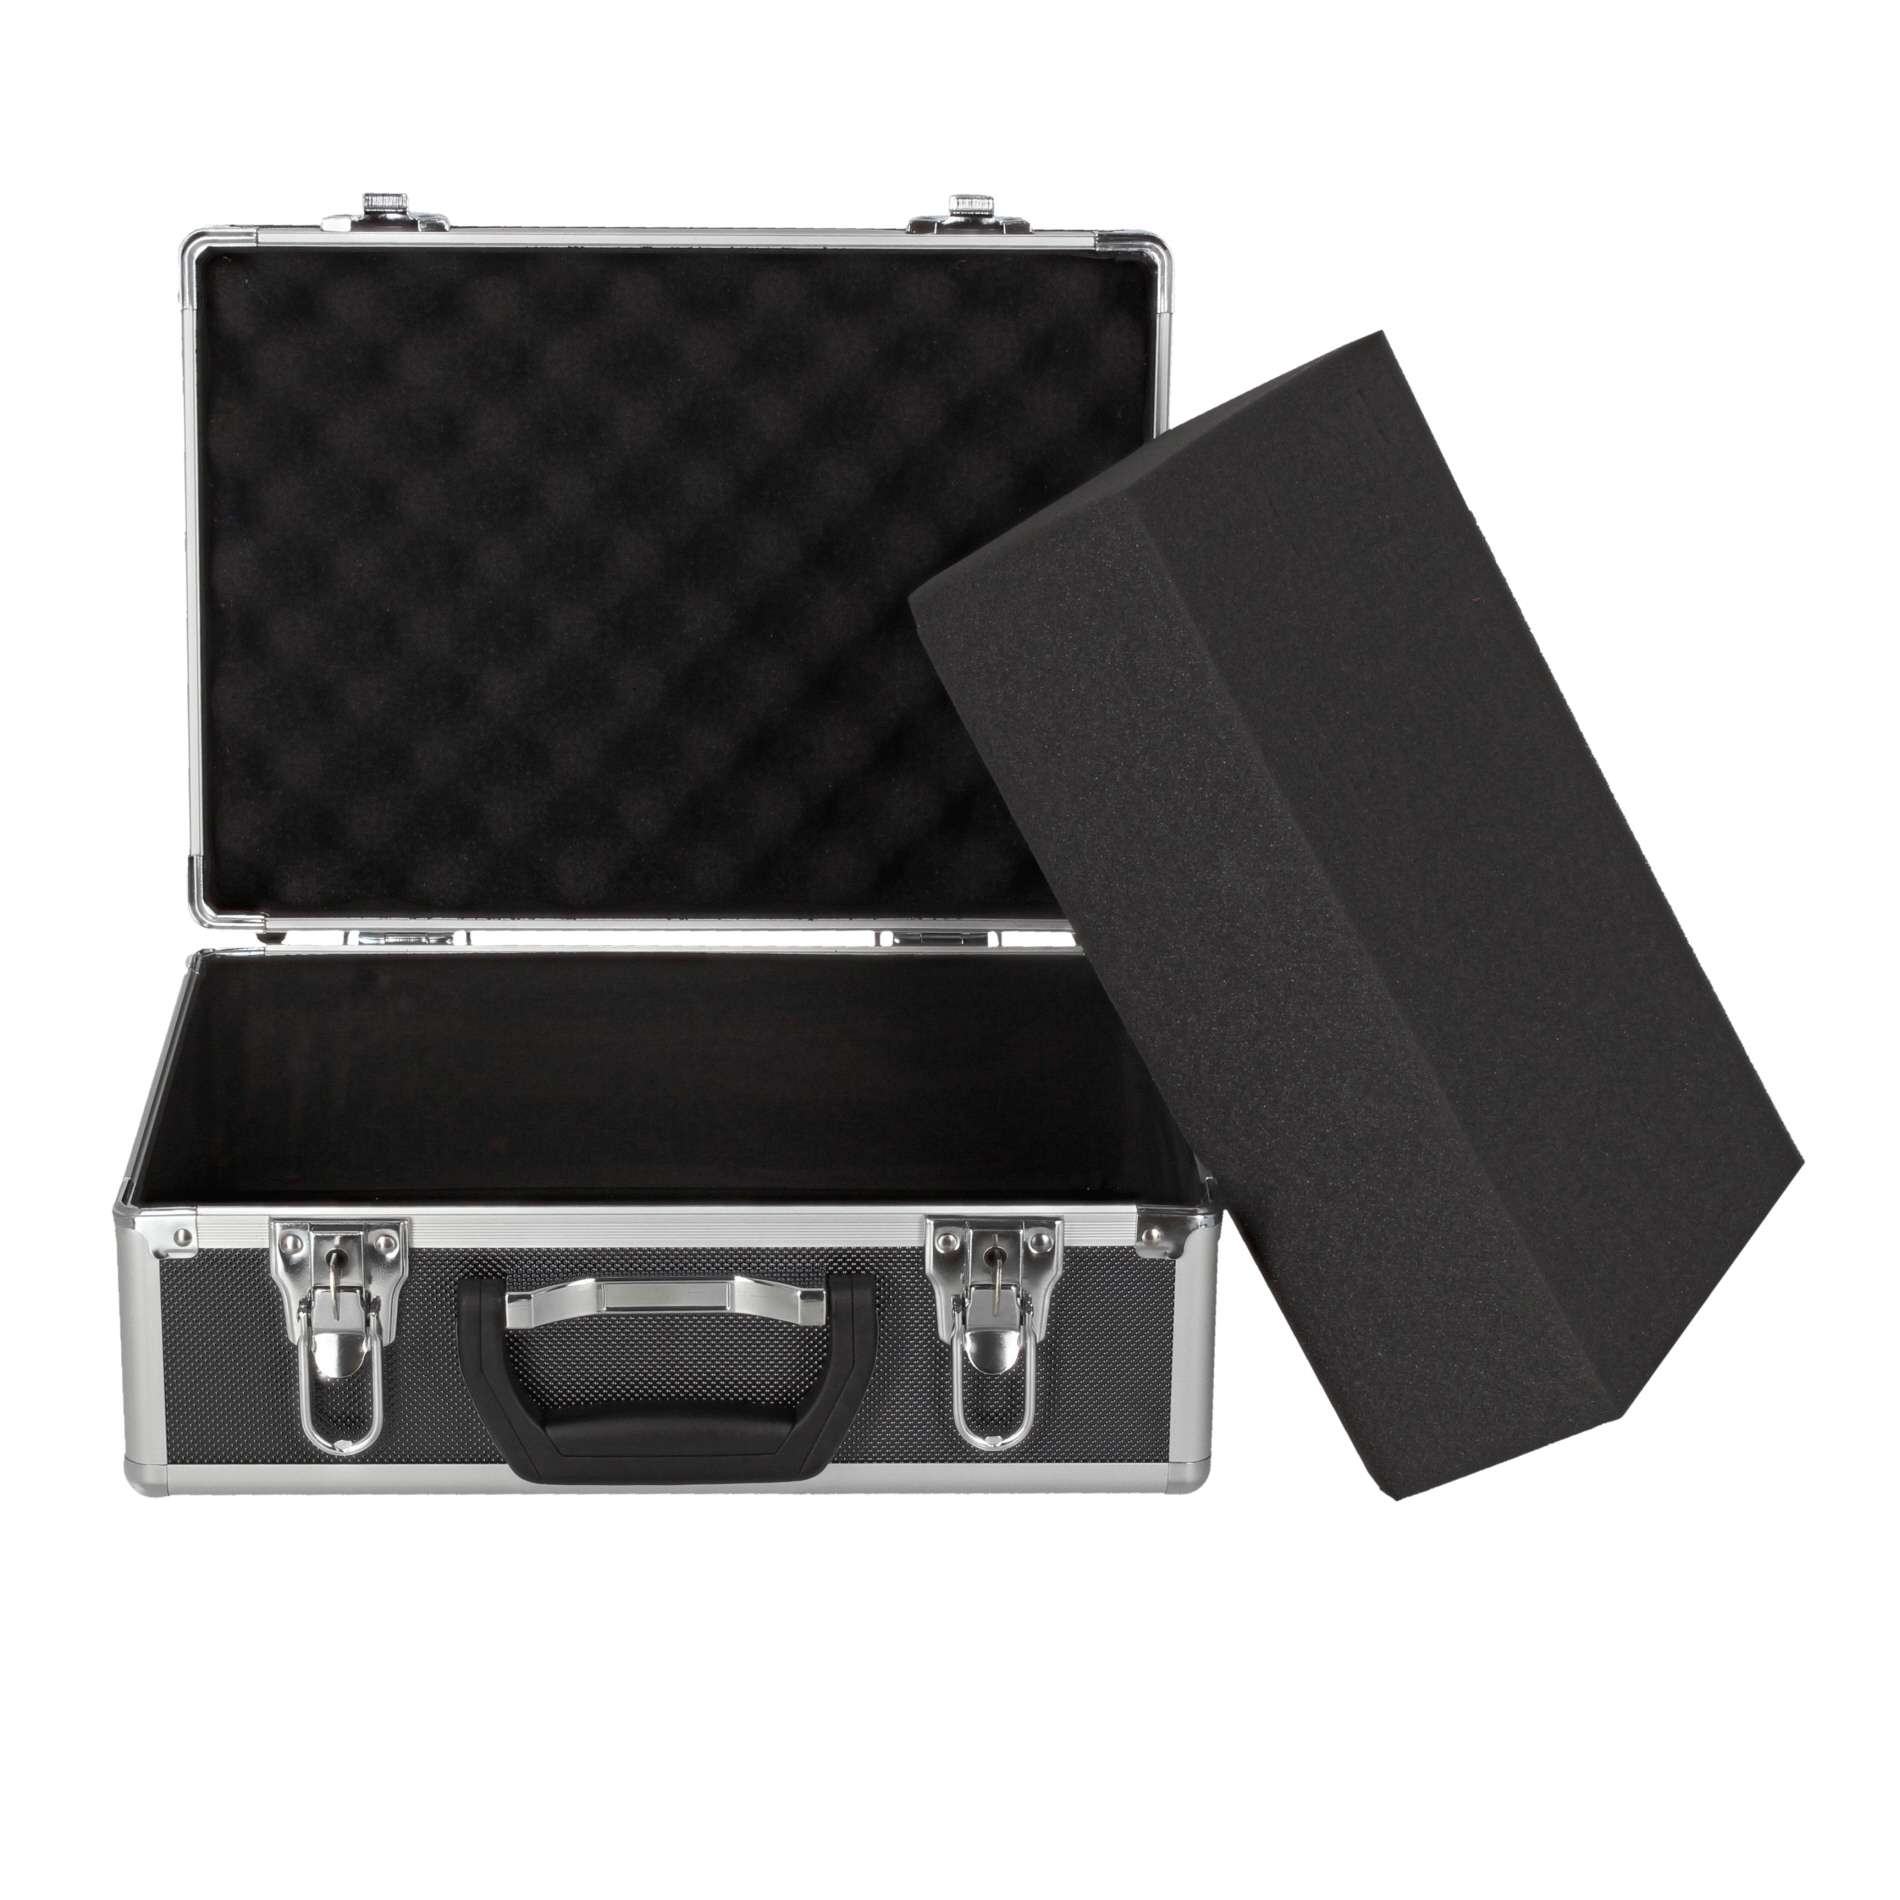 Power Acoustics Valise De Transport Pour Mixeur - Cases for mixing desk - Variation 2